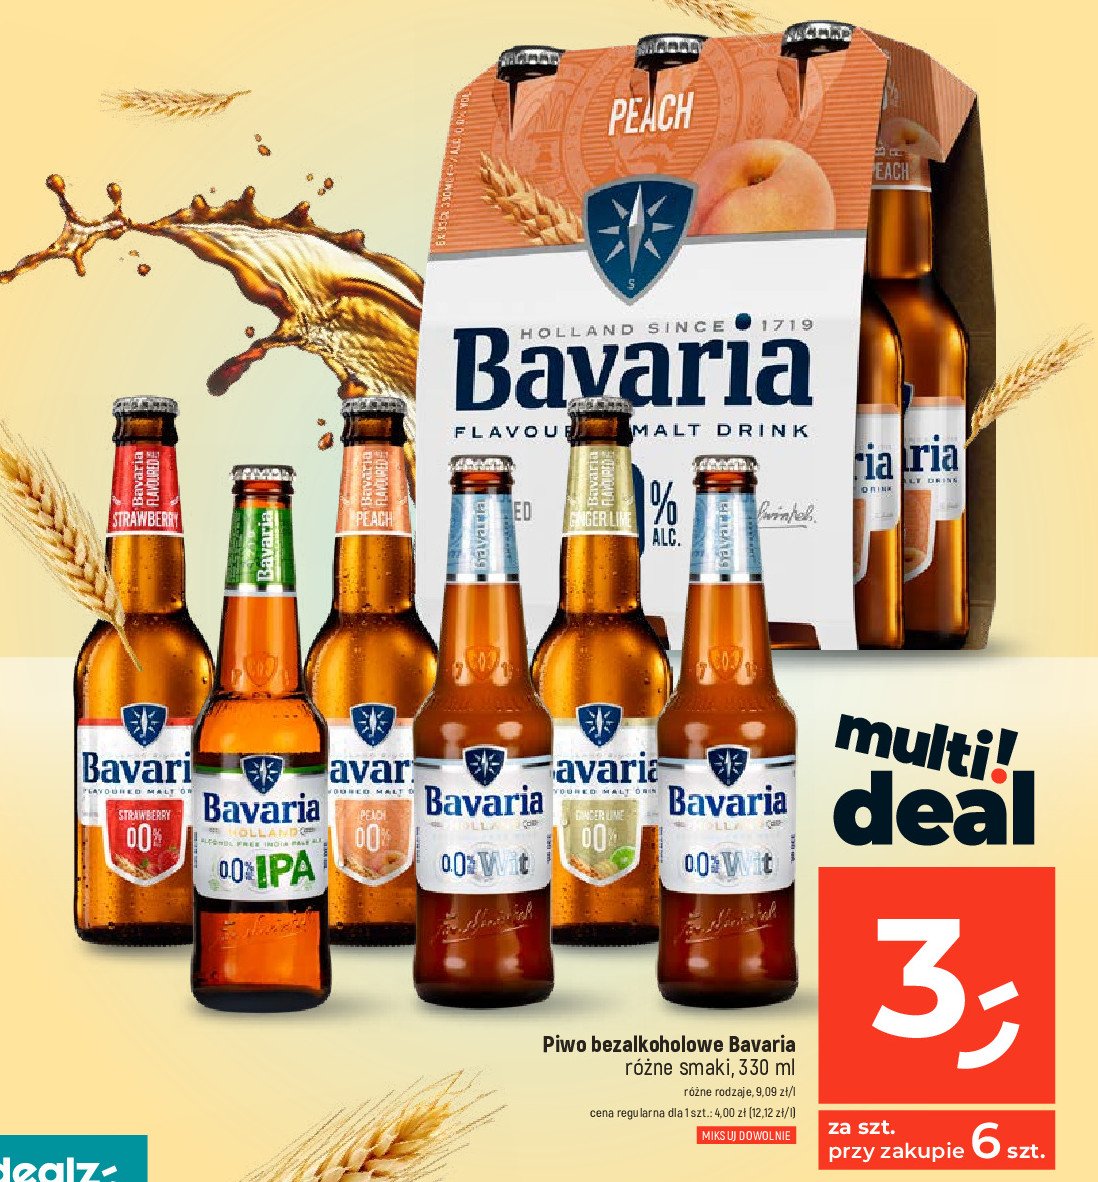 Piwo Bavaria 0.0% wit promocja